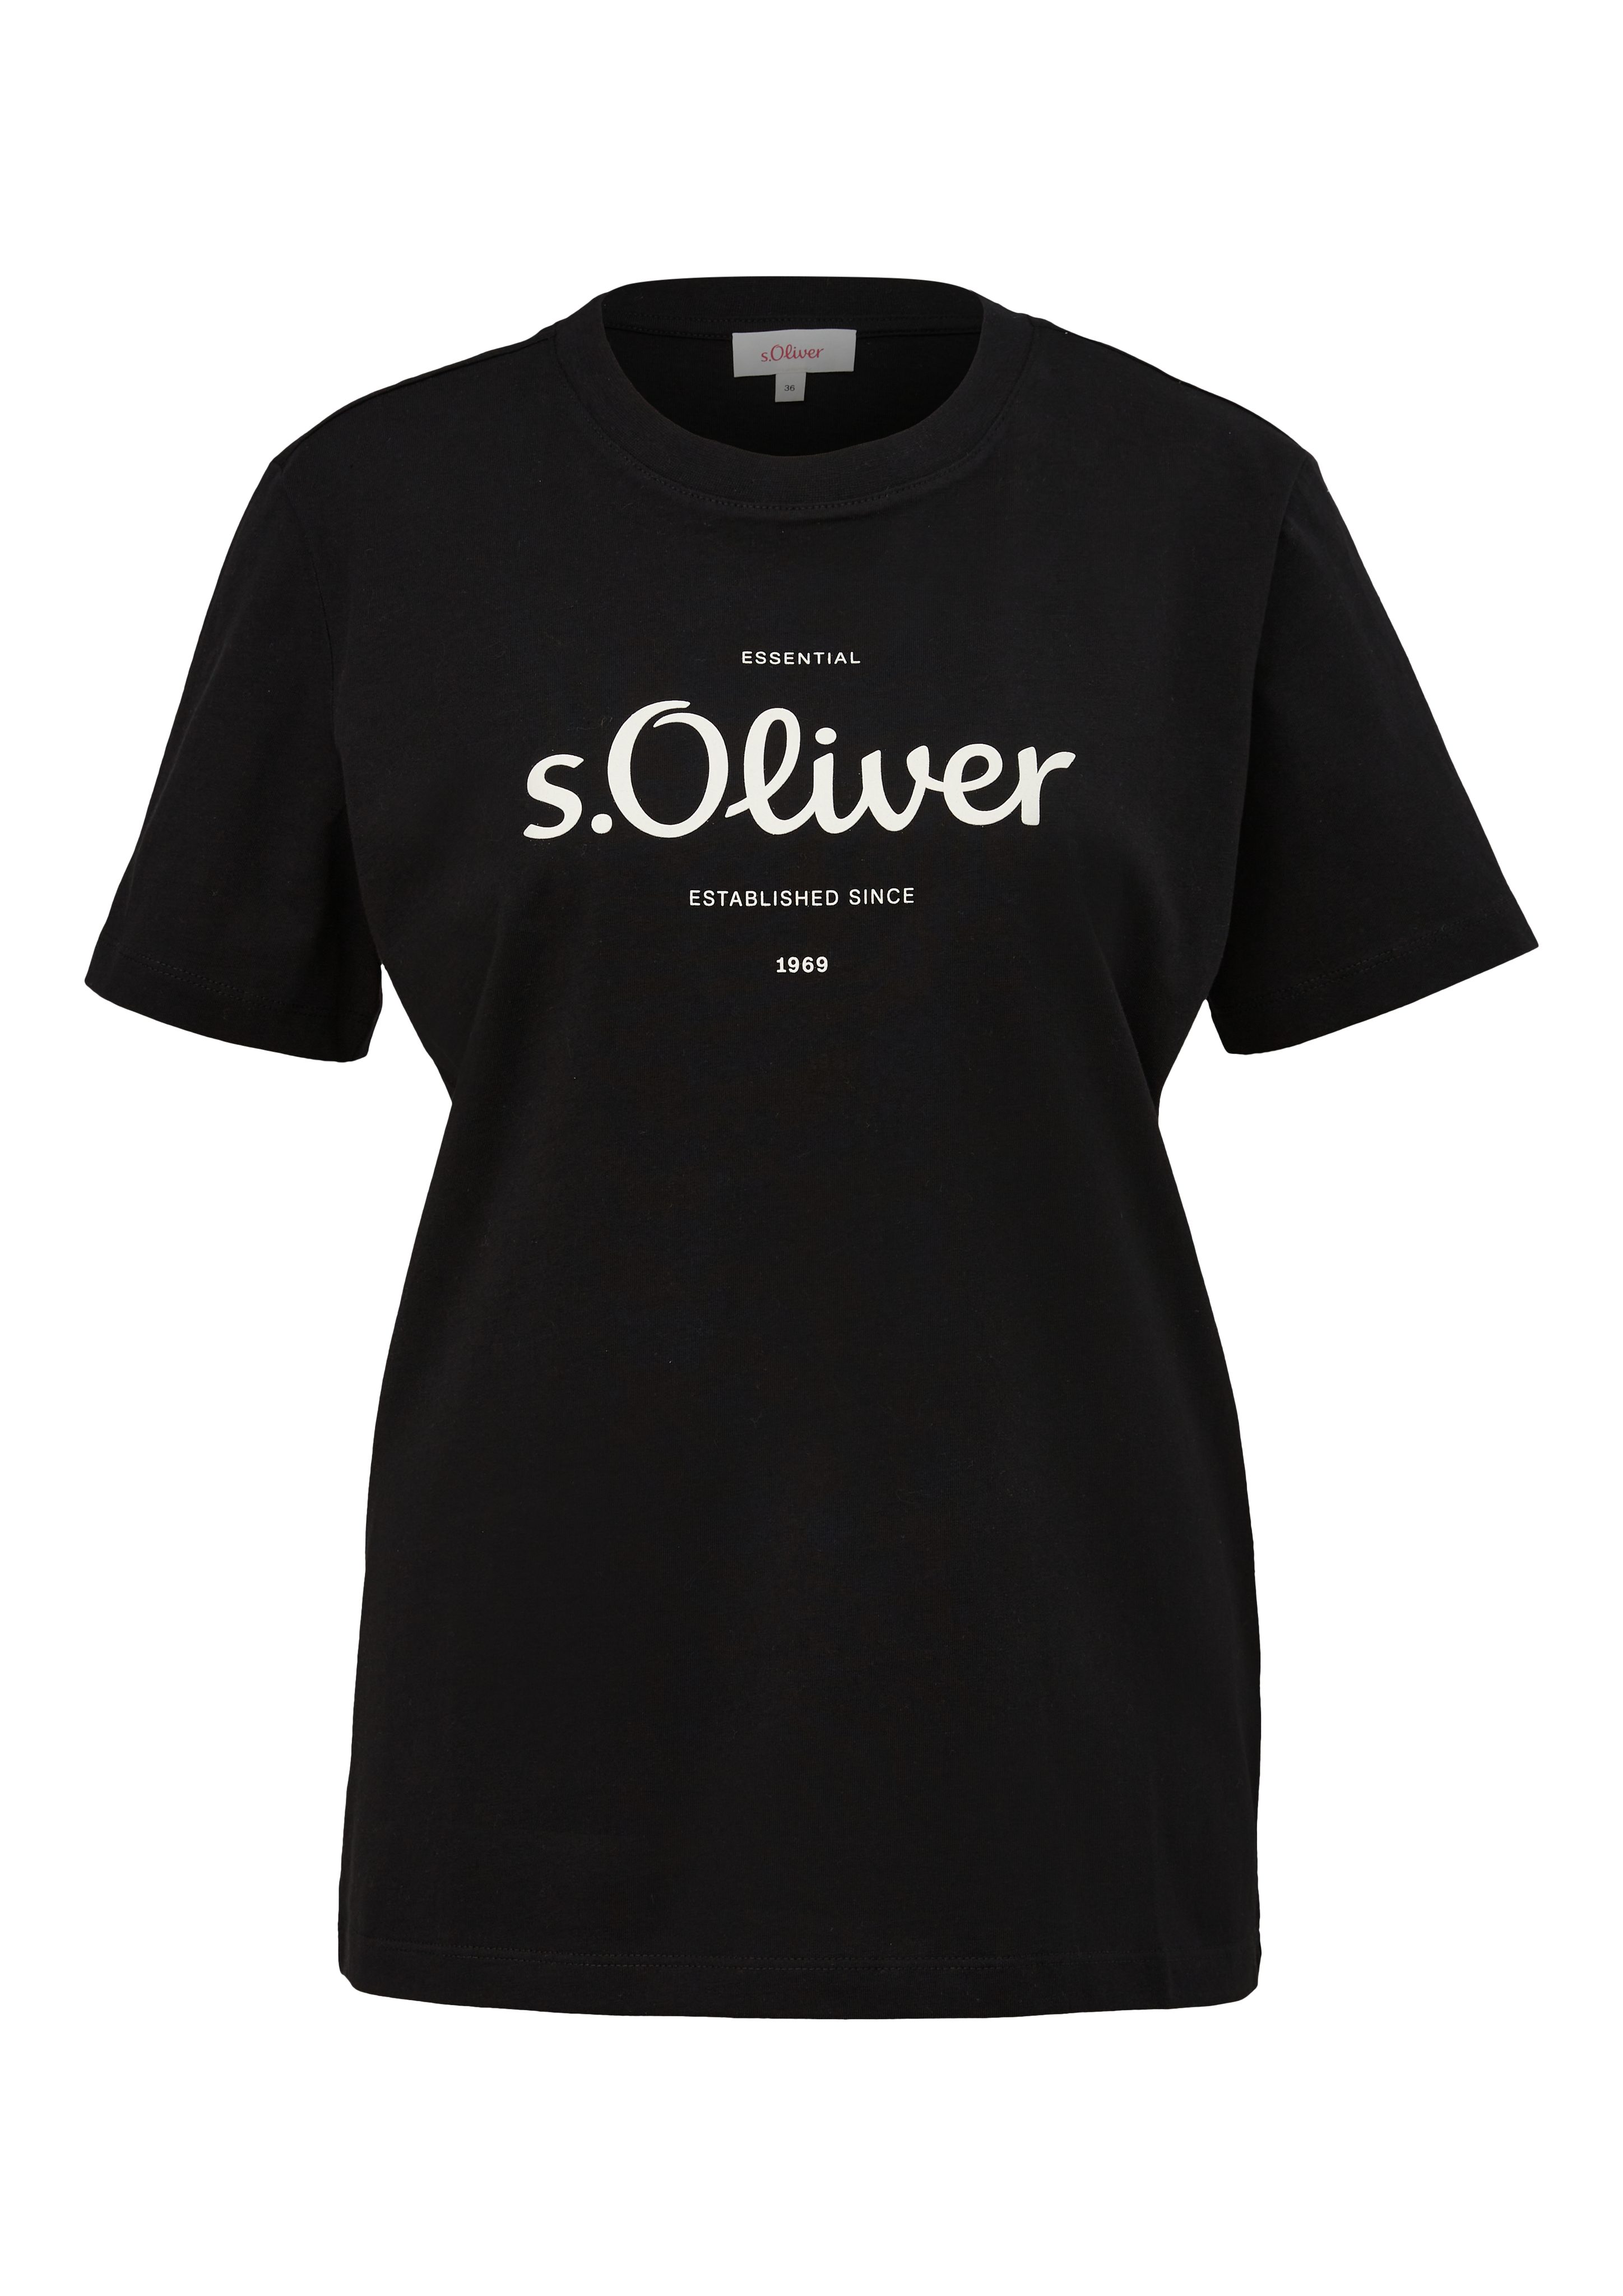 mit vorne grey/black Logodruck s.Oliver T-Shirt